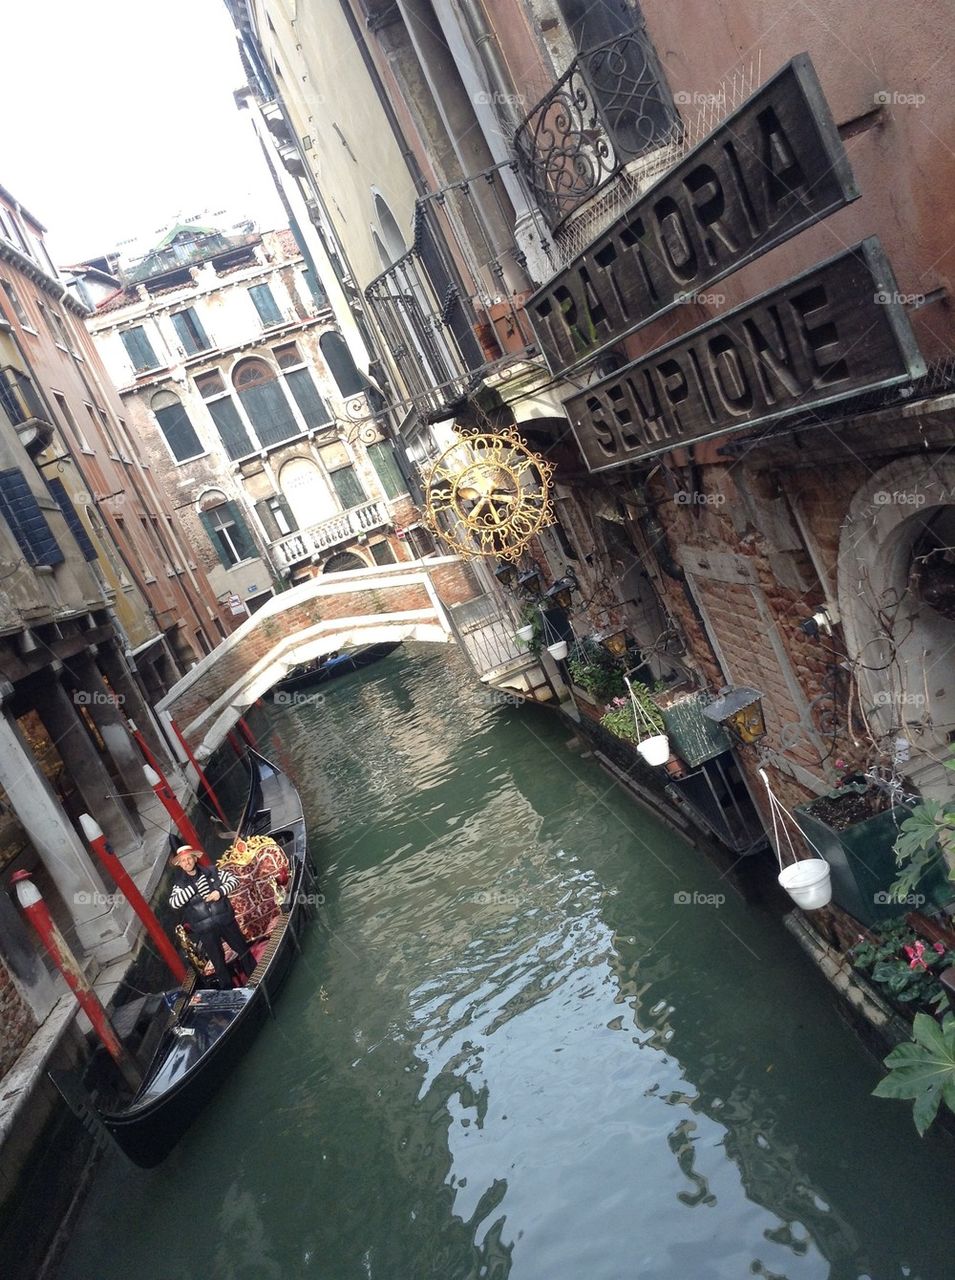 Venice 